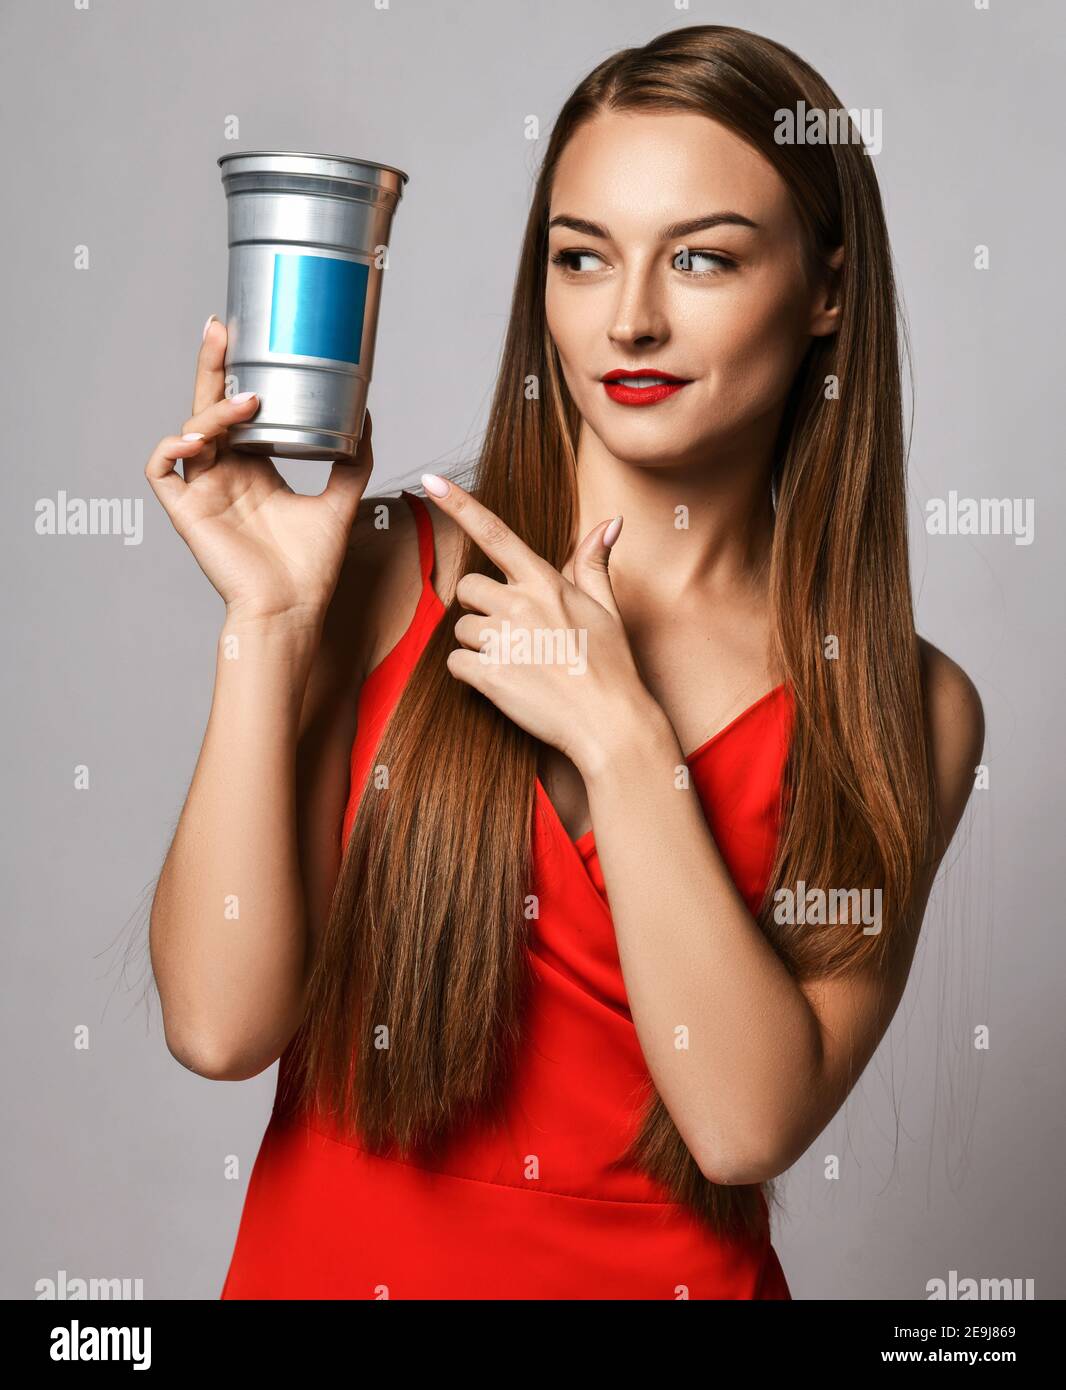 Junge Frau mit langen seidigen Haaren in roten Kleid zeigt Finger am Behälter mit Haarpflege Behandlung Kosmetik hält sie Stockfoto